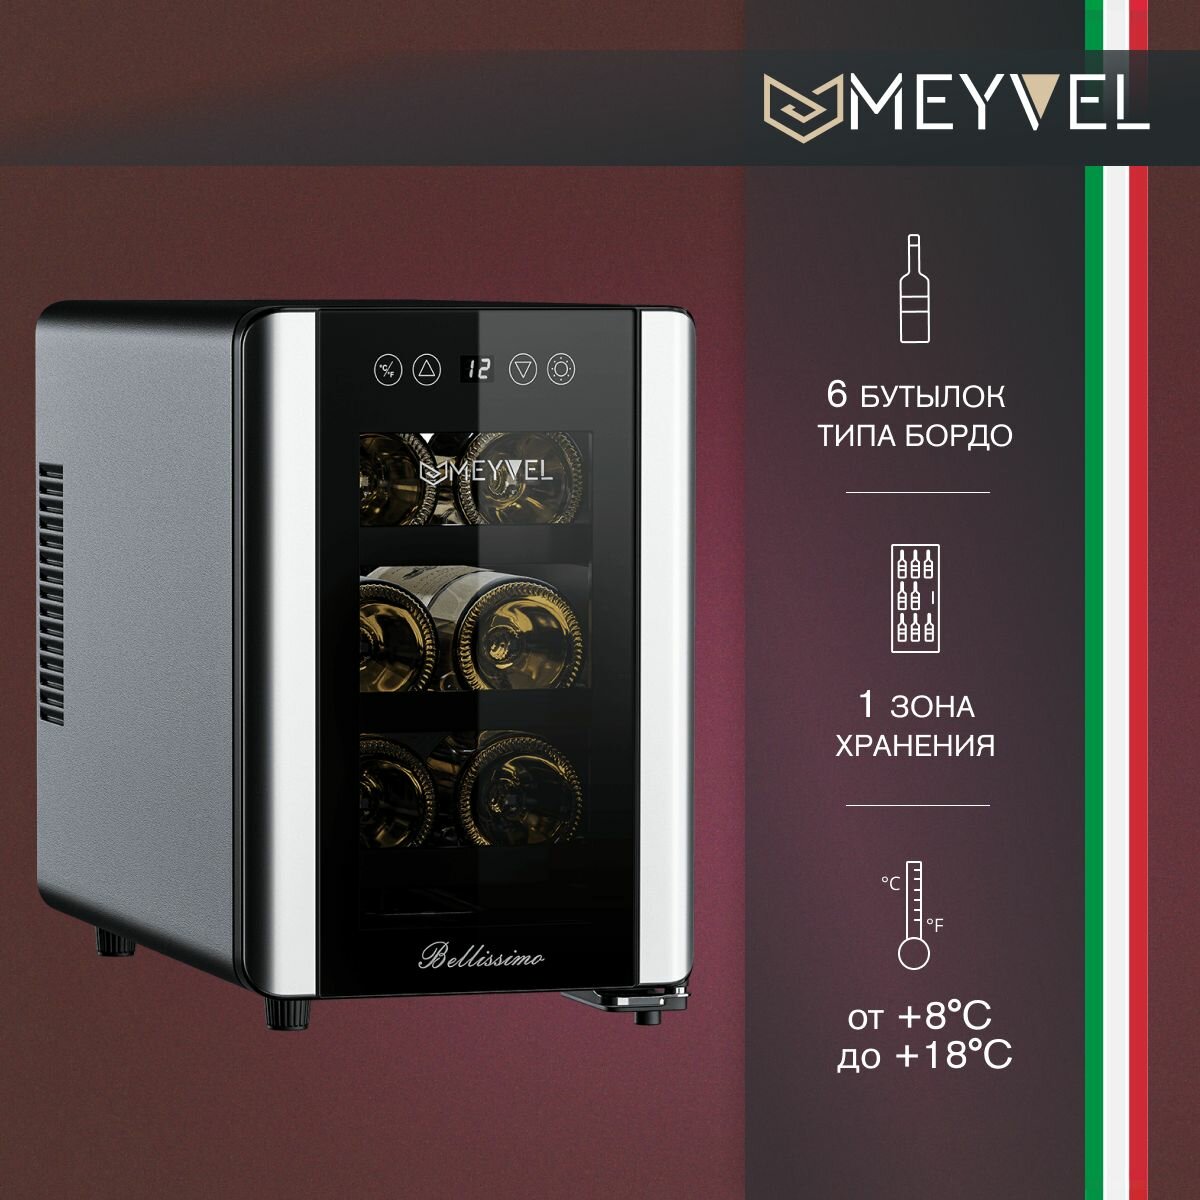 Винный холодильный шкаф Meyvel MEYVEL MV06-BSF1 (EASY) термоэлектрический (отдельностоящий холодильник для вина на 6 бутылок)